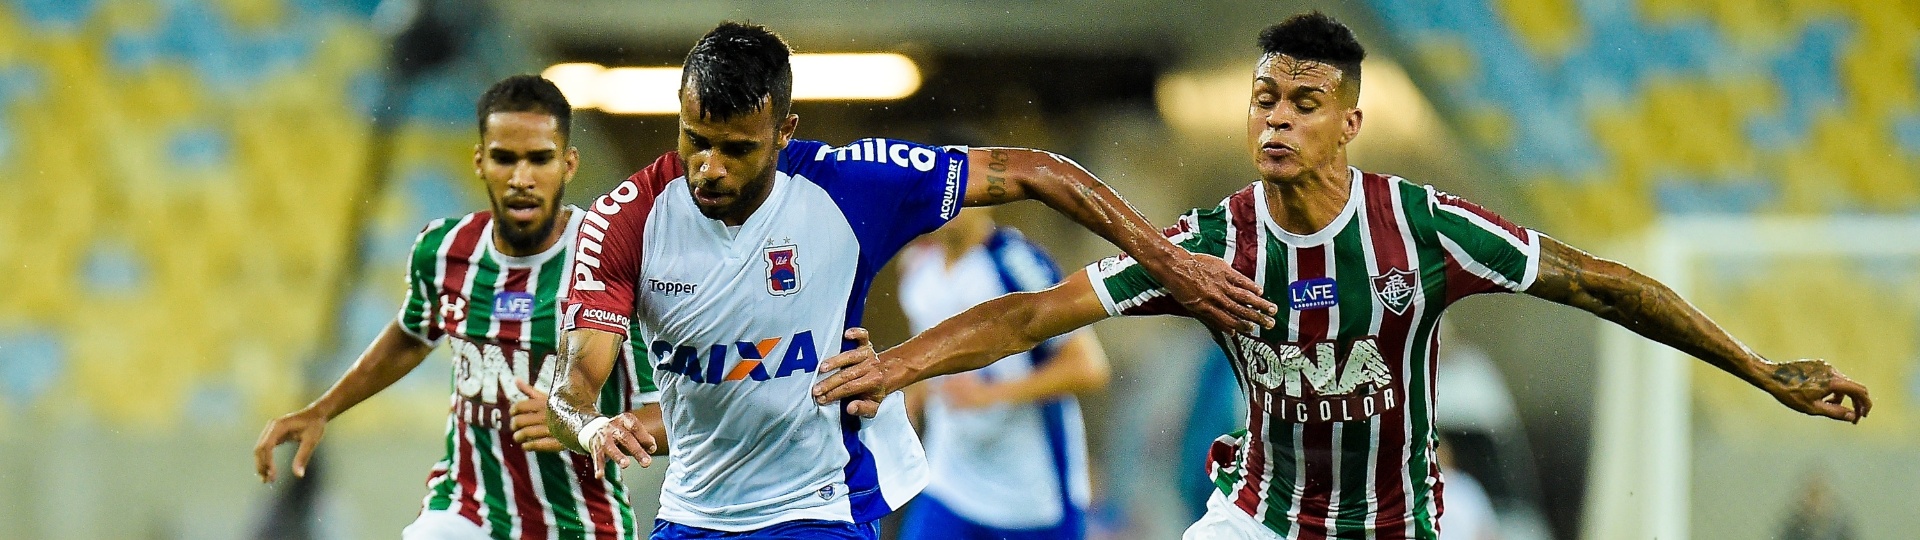 Alex Santana e Richard disputam bola durante partida entre Fluminense e Paraná Clube